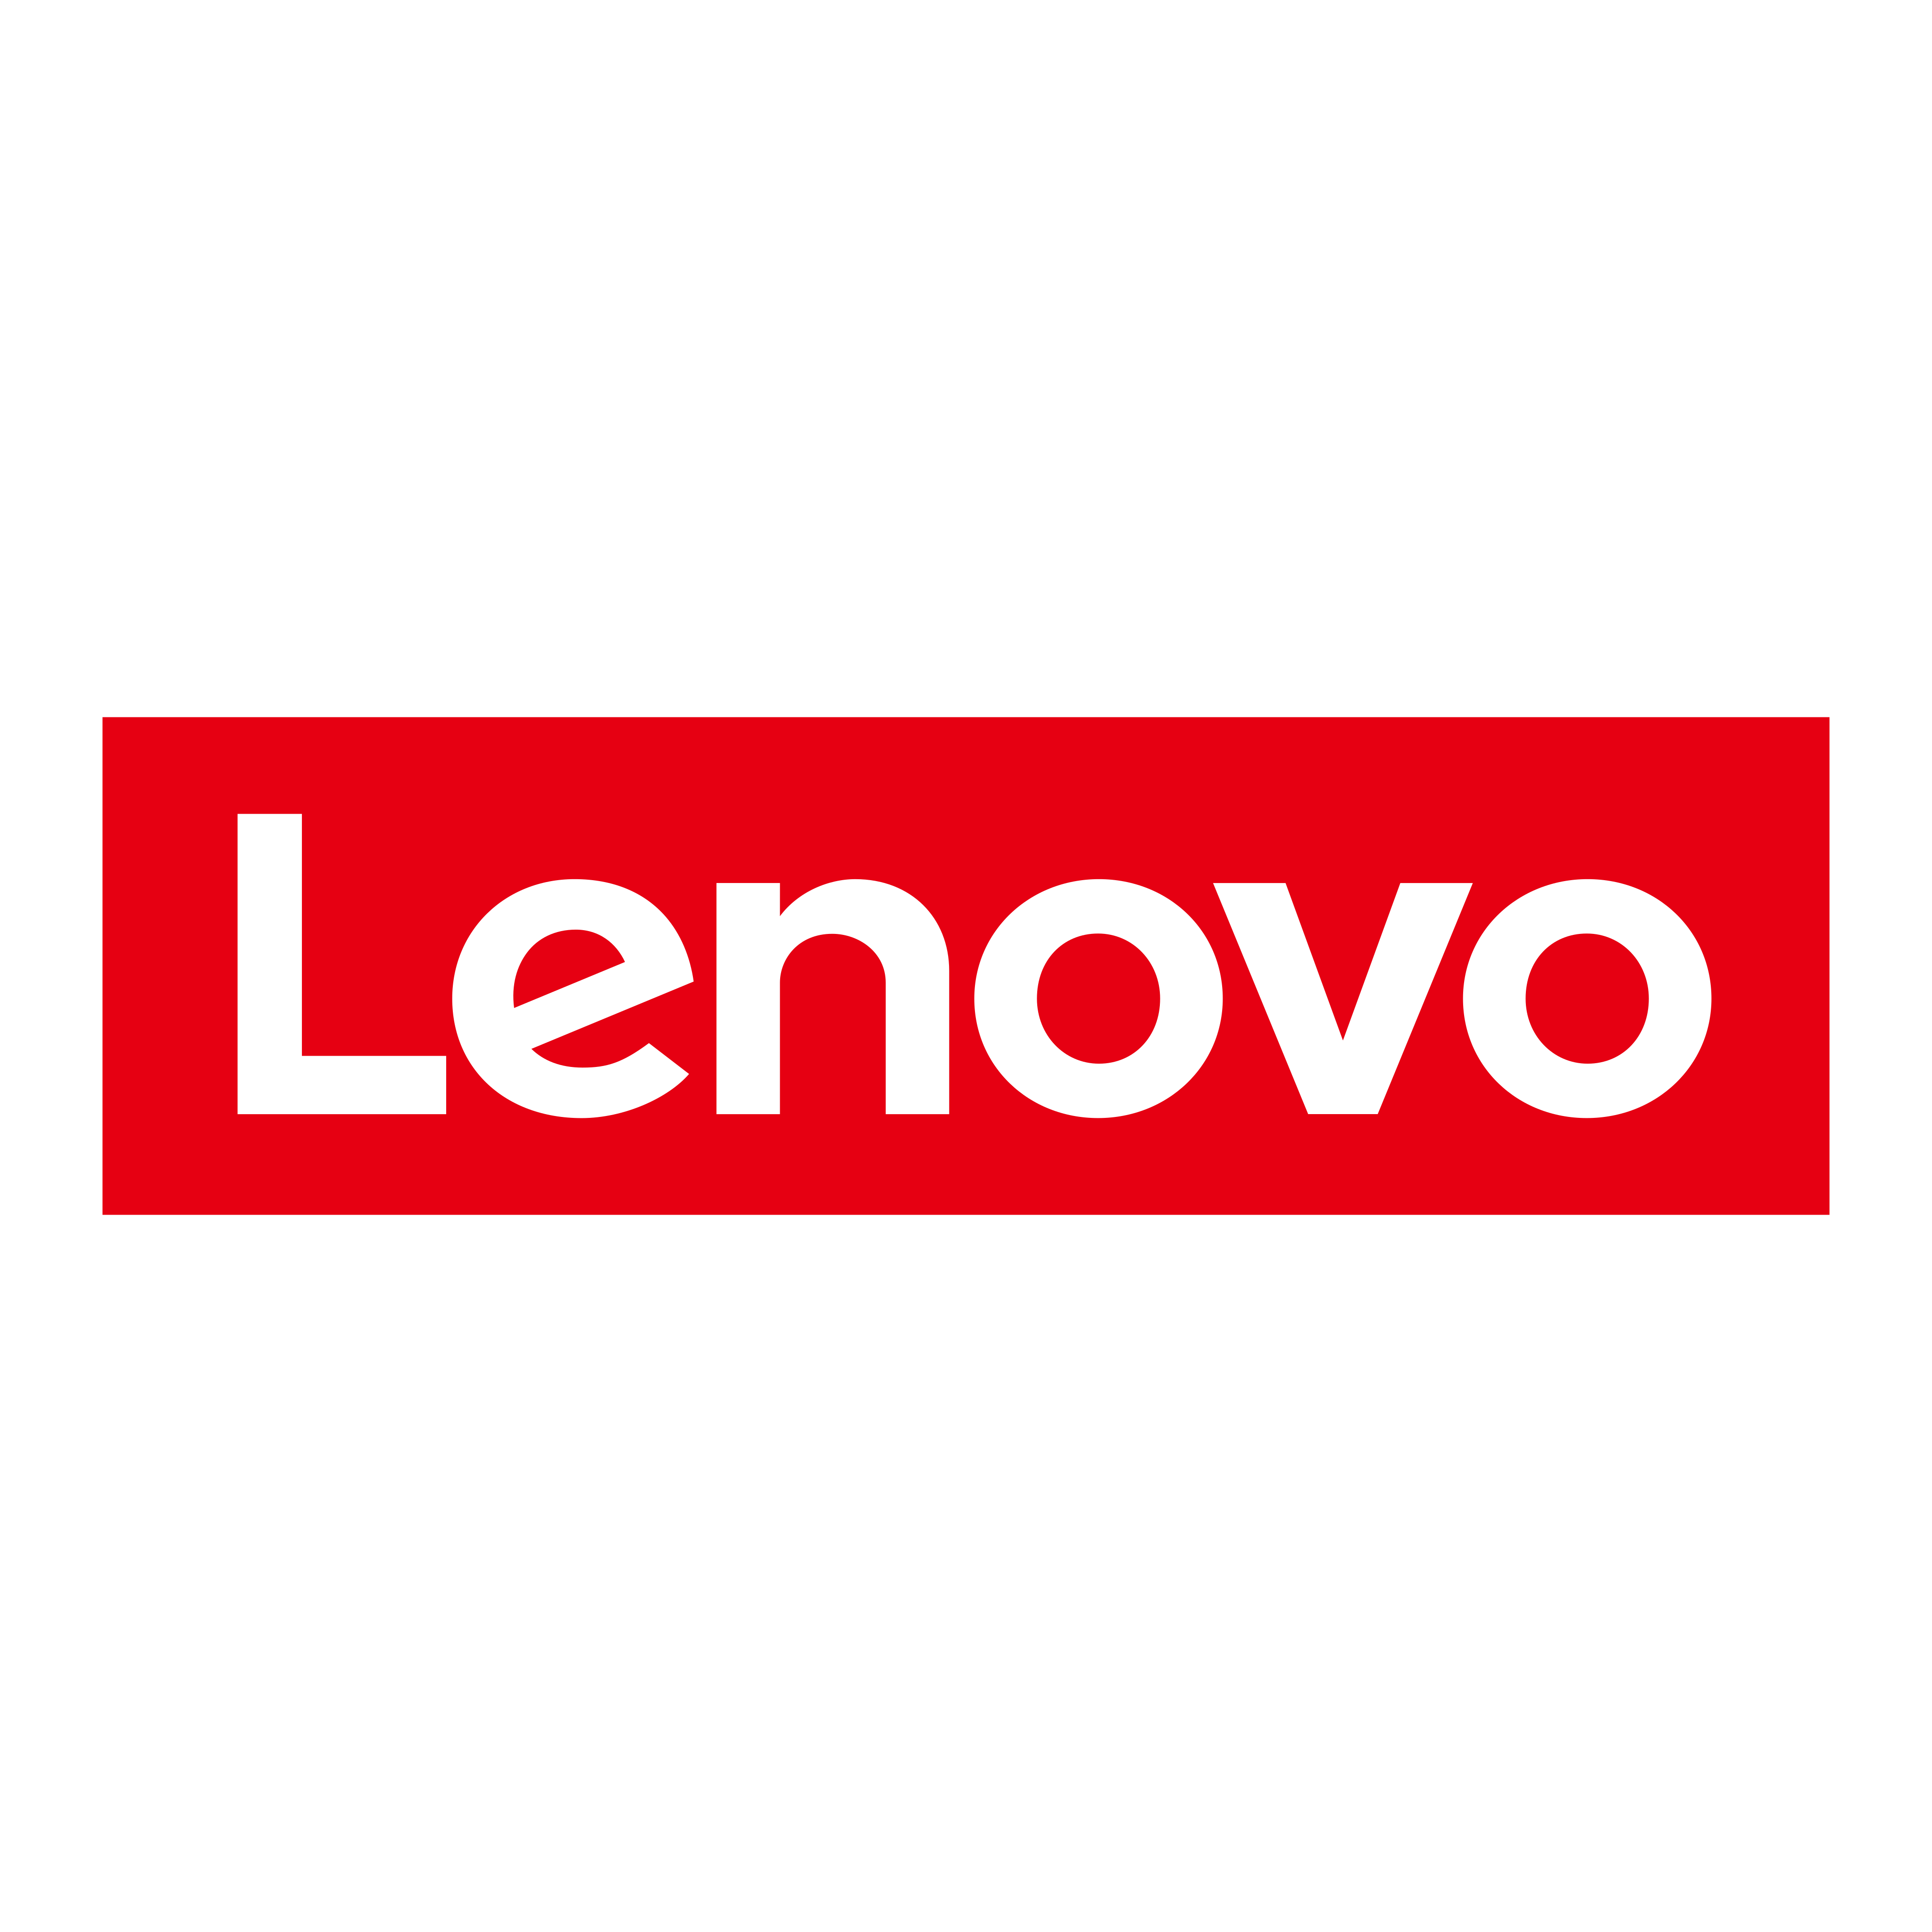 Lenovo Transparent Images